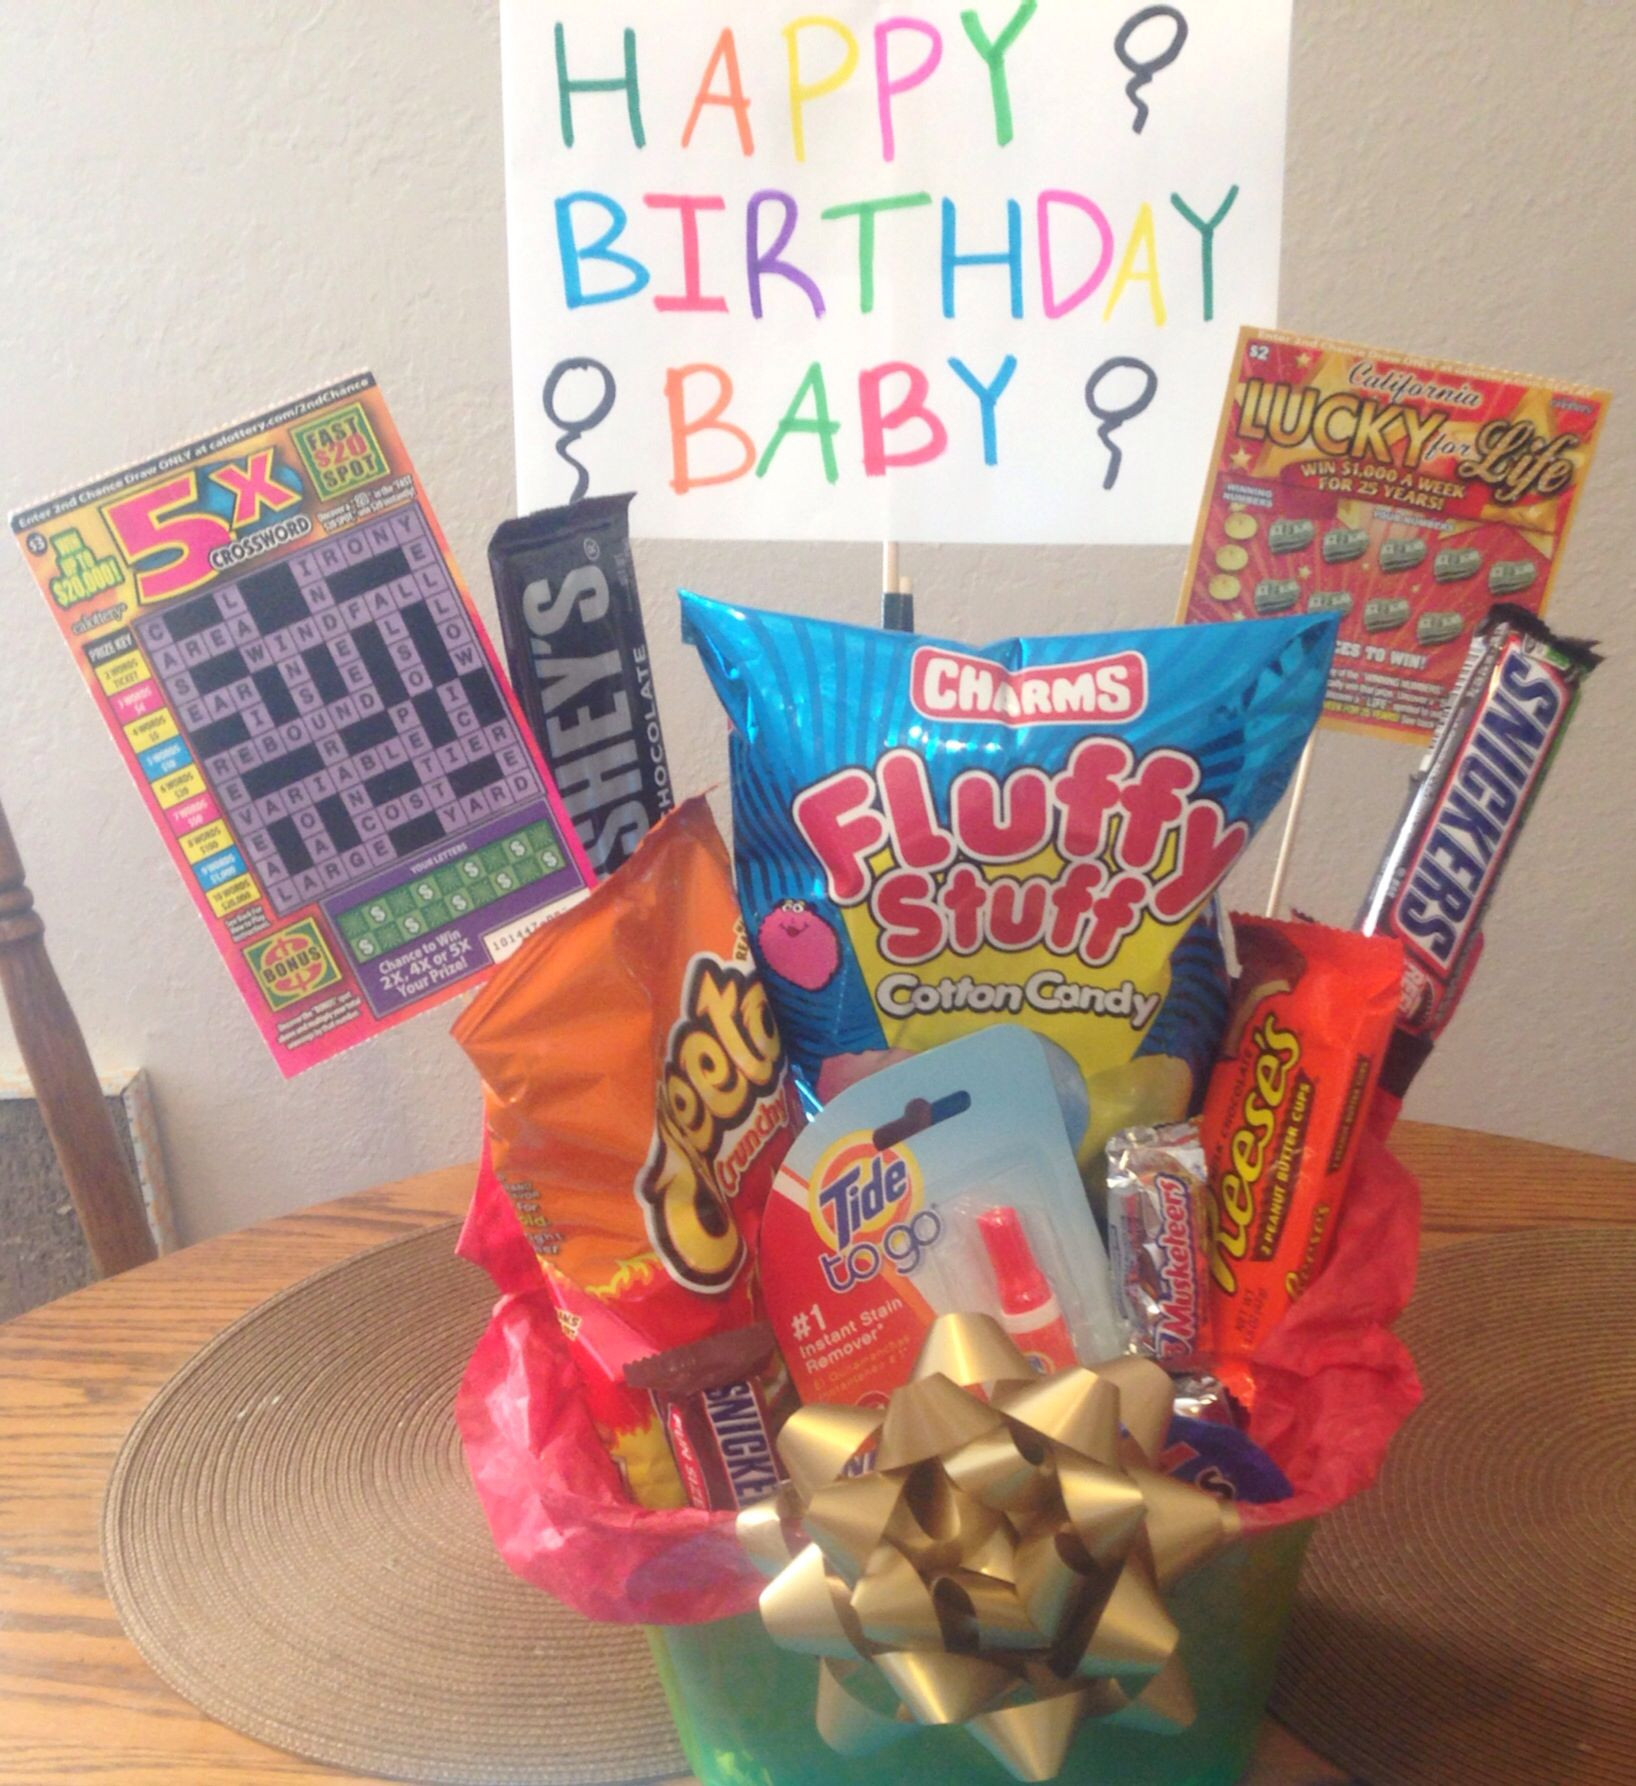 22Nd Birthday Gift Ideas For Boyfriend
 For my boyfriend s 22nd Birthday